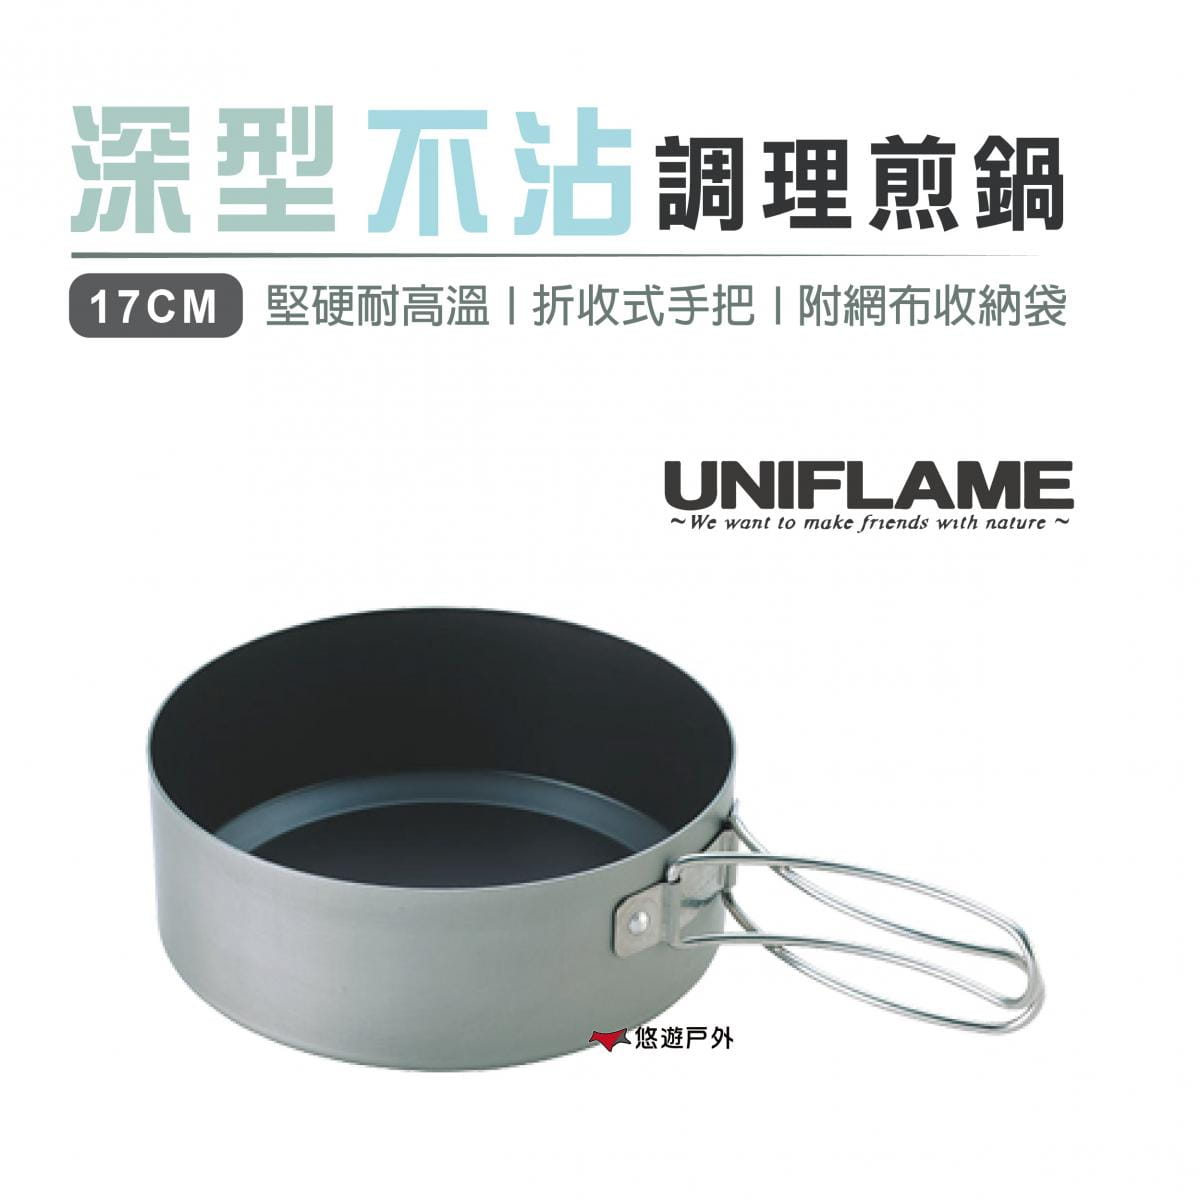 【日本 UNIFLAME】深型不沾調理煎鍋 17cm_U667606 (悠遊戶外) 0